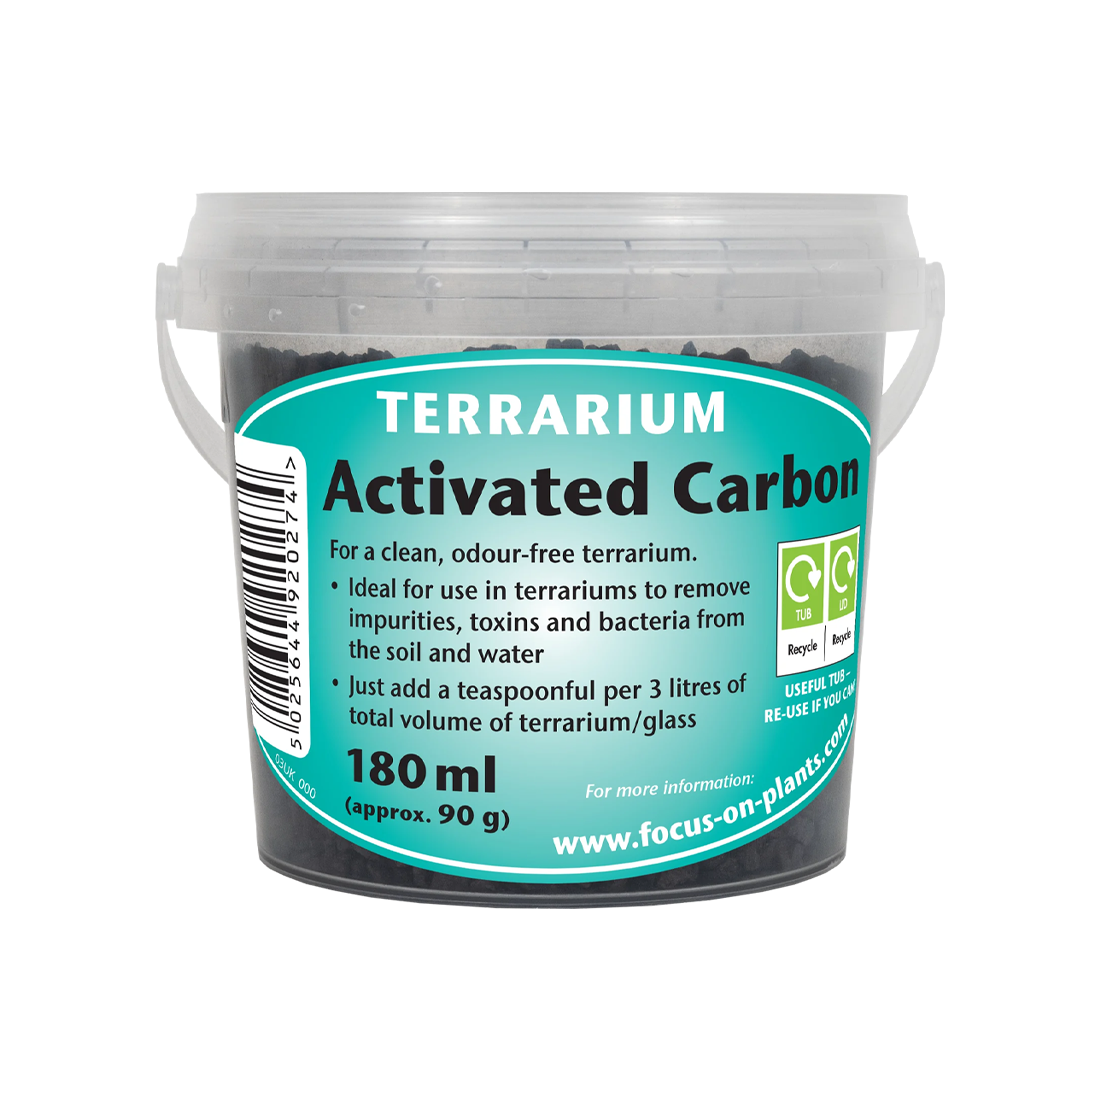 Terrarium Activated Carbon - 180ml